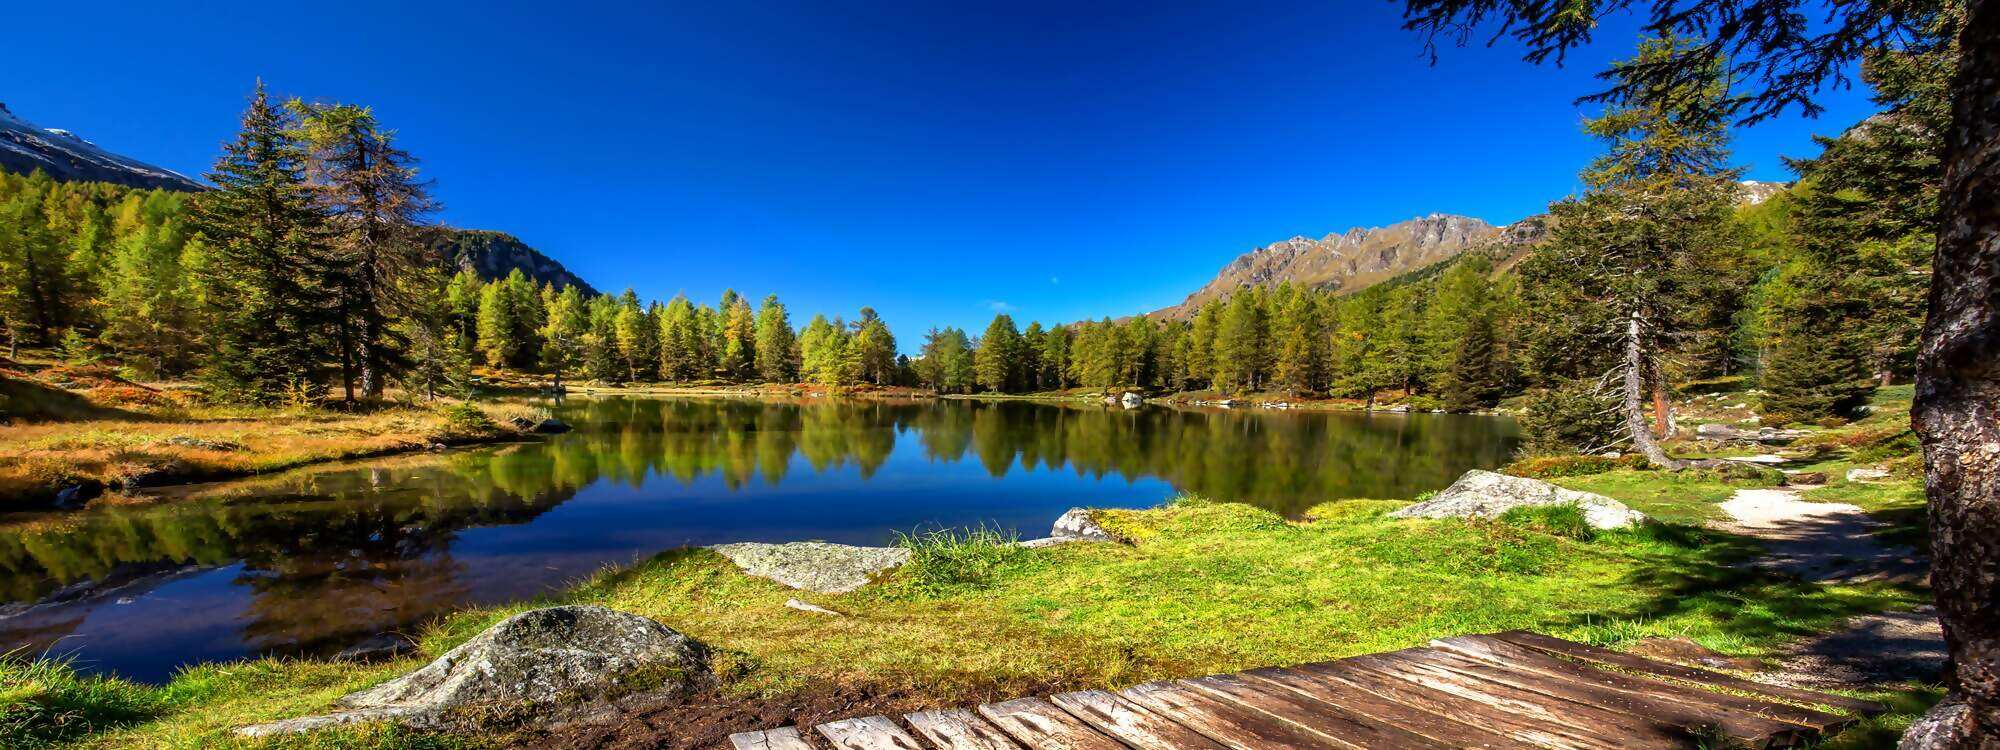 Trip Andorra - Unterkunft für die Feriendestination Tirol suchen, die besten Angebote vergleichen & reservieren! Viel Spaß beim Urlaub buchen!